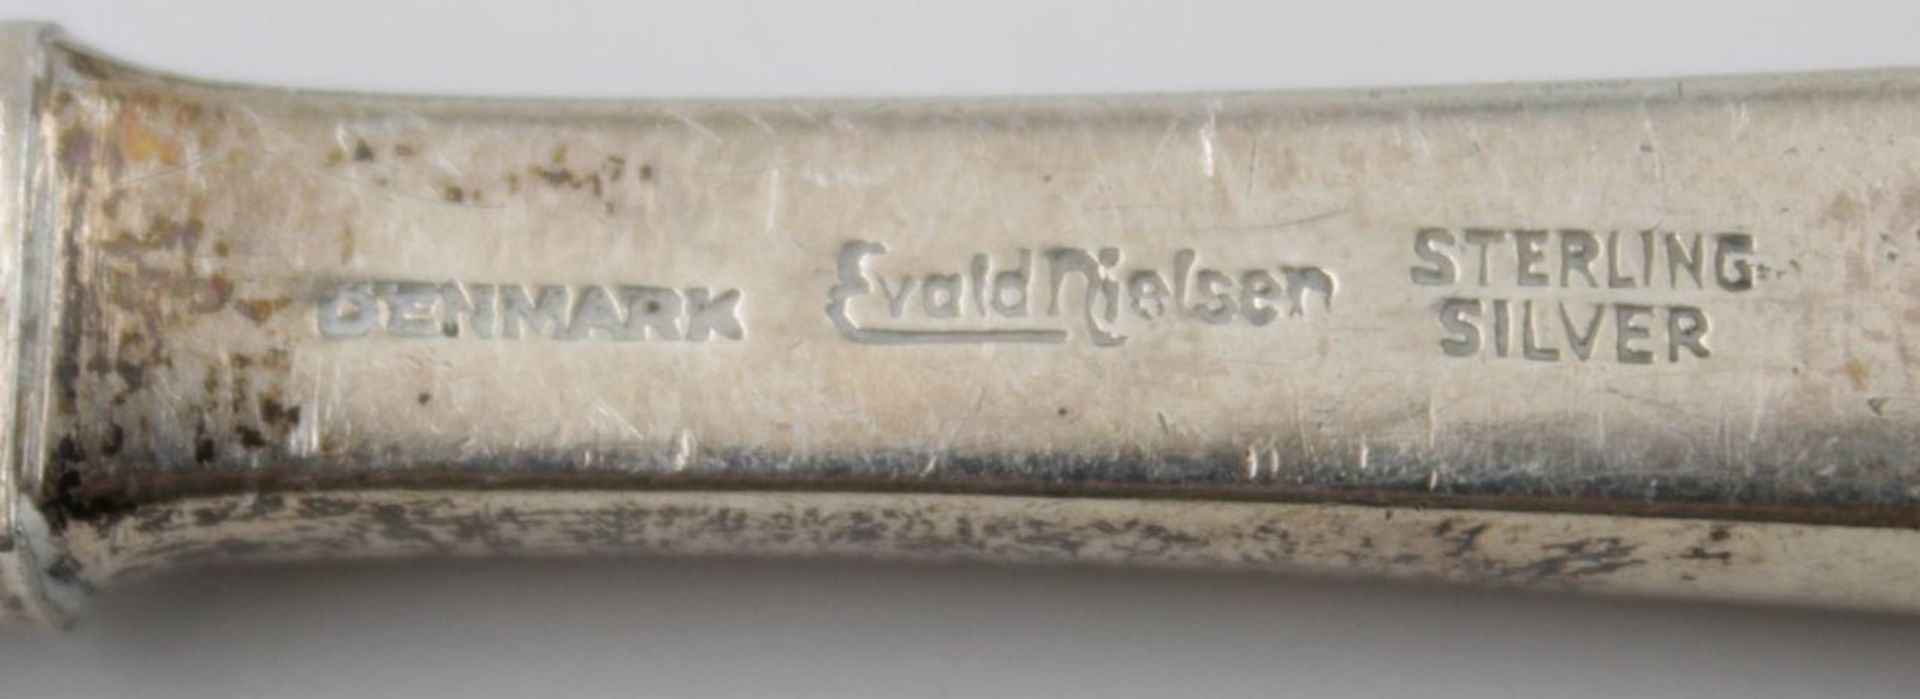 Kleines Salatbesteck Evald Nielsen mit Silbergriffen 925 er , L- 18,5 cm . - Bild 3 aus 3